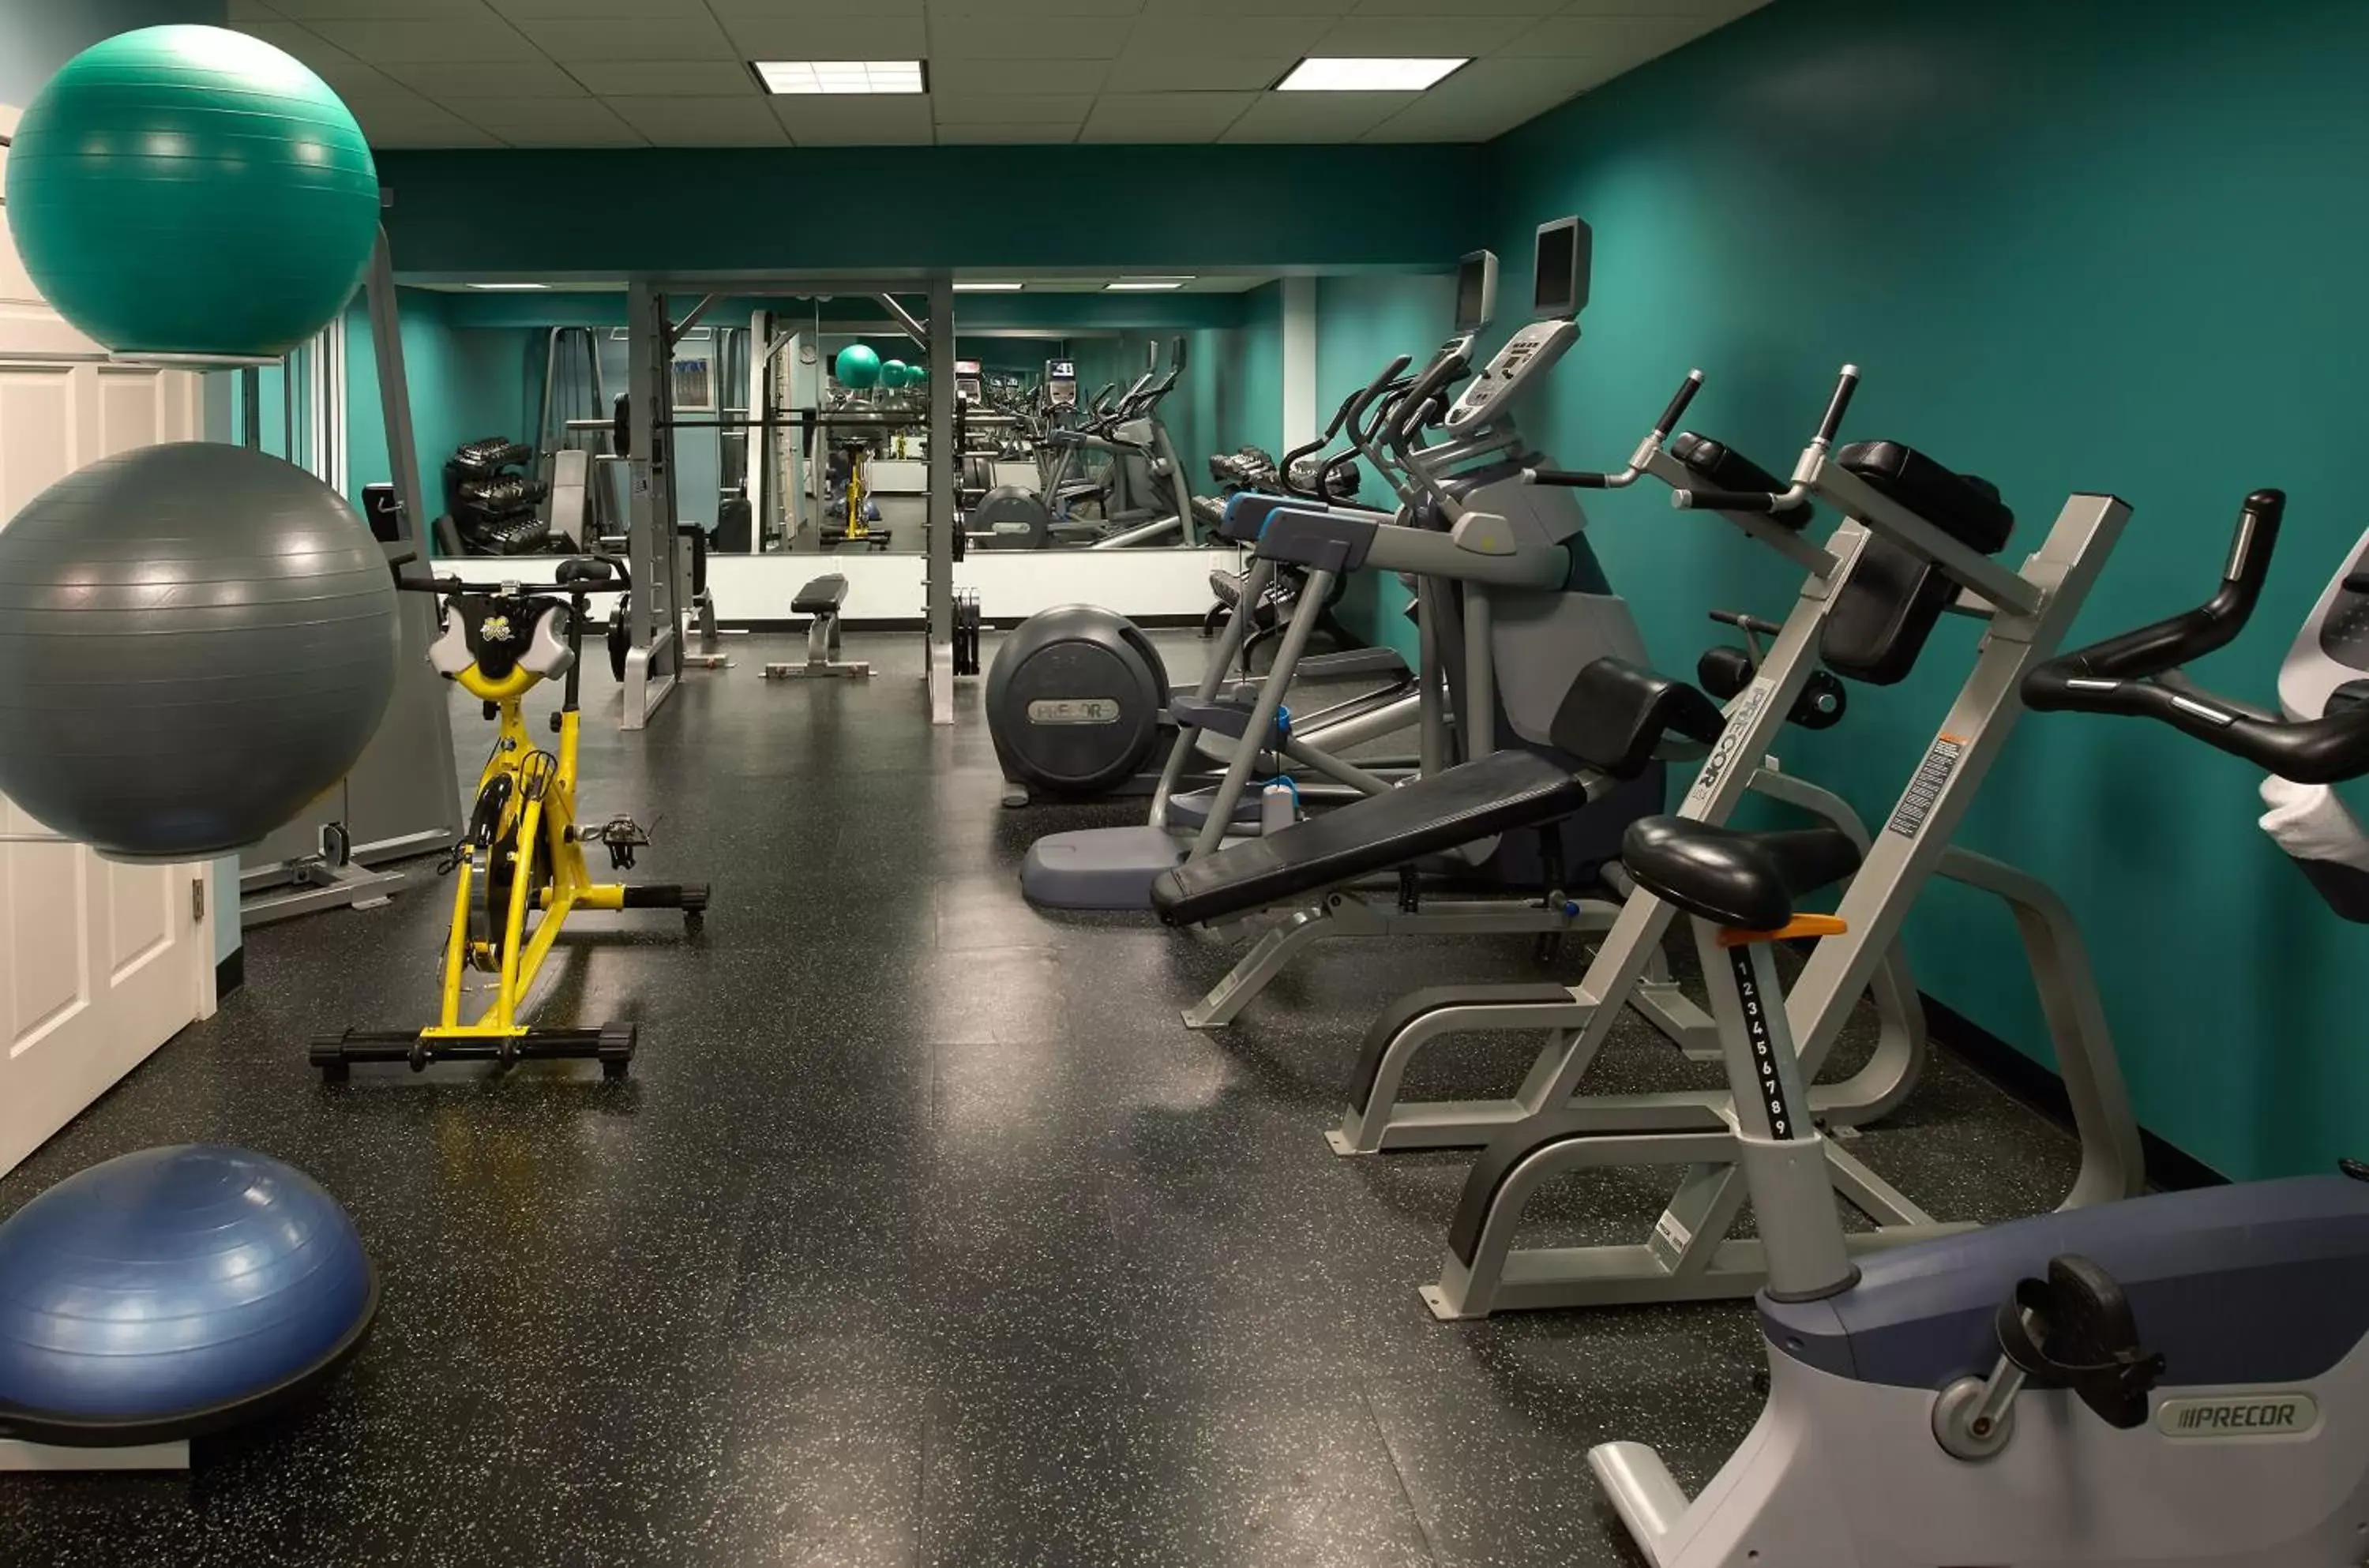 Fitness centre/facilities, Fitness Center/Facilities in Revere Hotel Boston Common